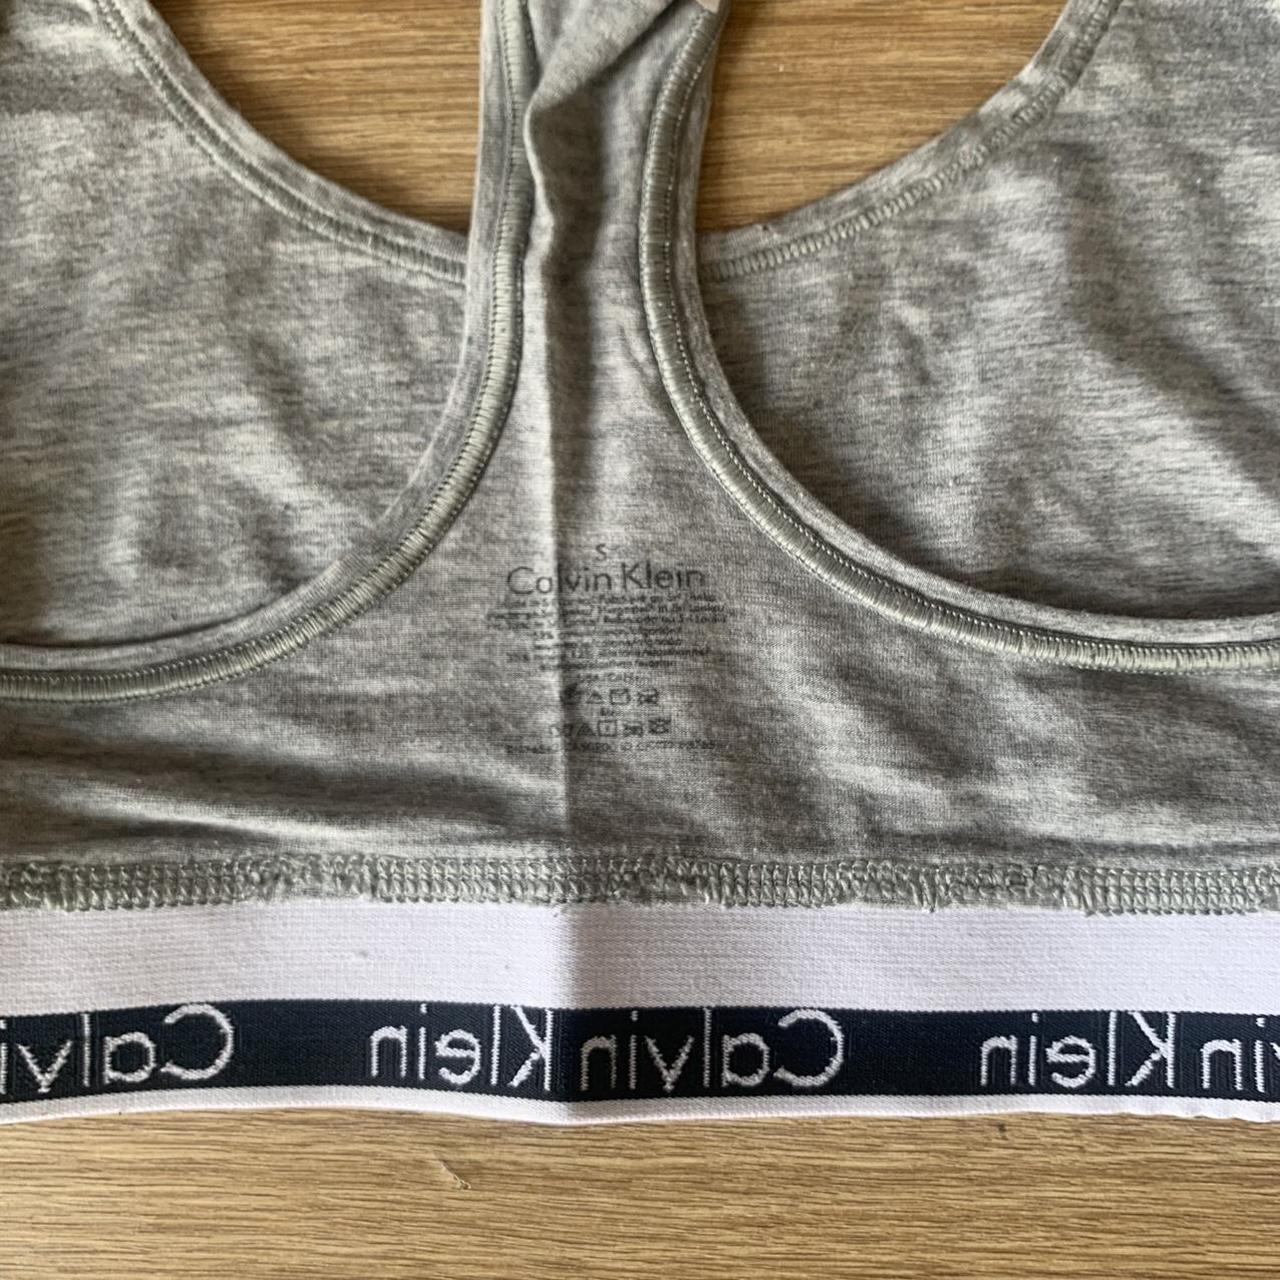 Calvin Klein grey sports bra size small excellent - Depop